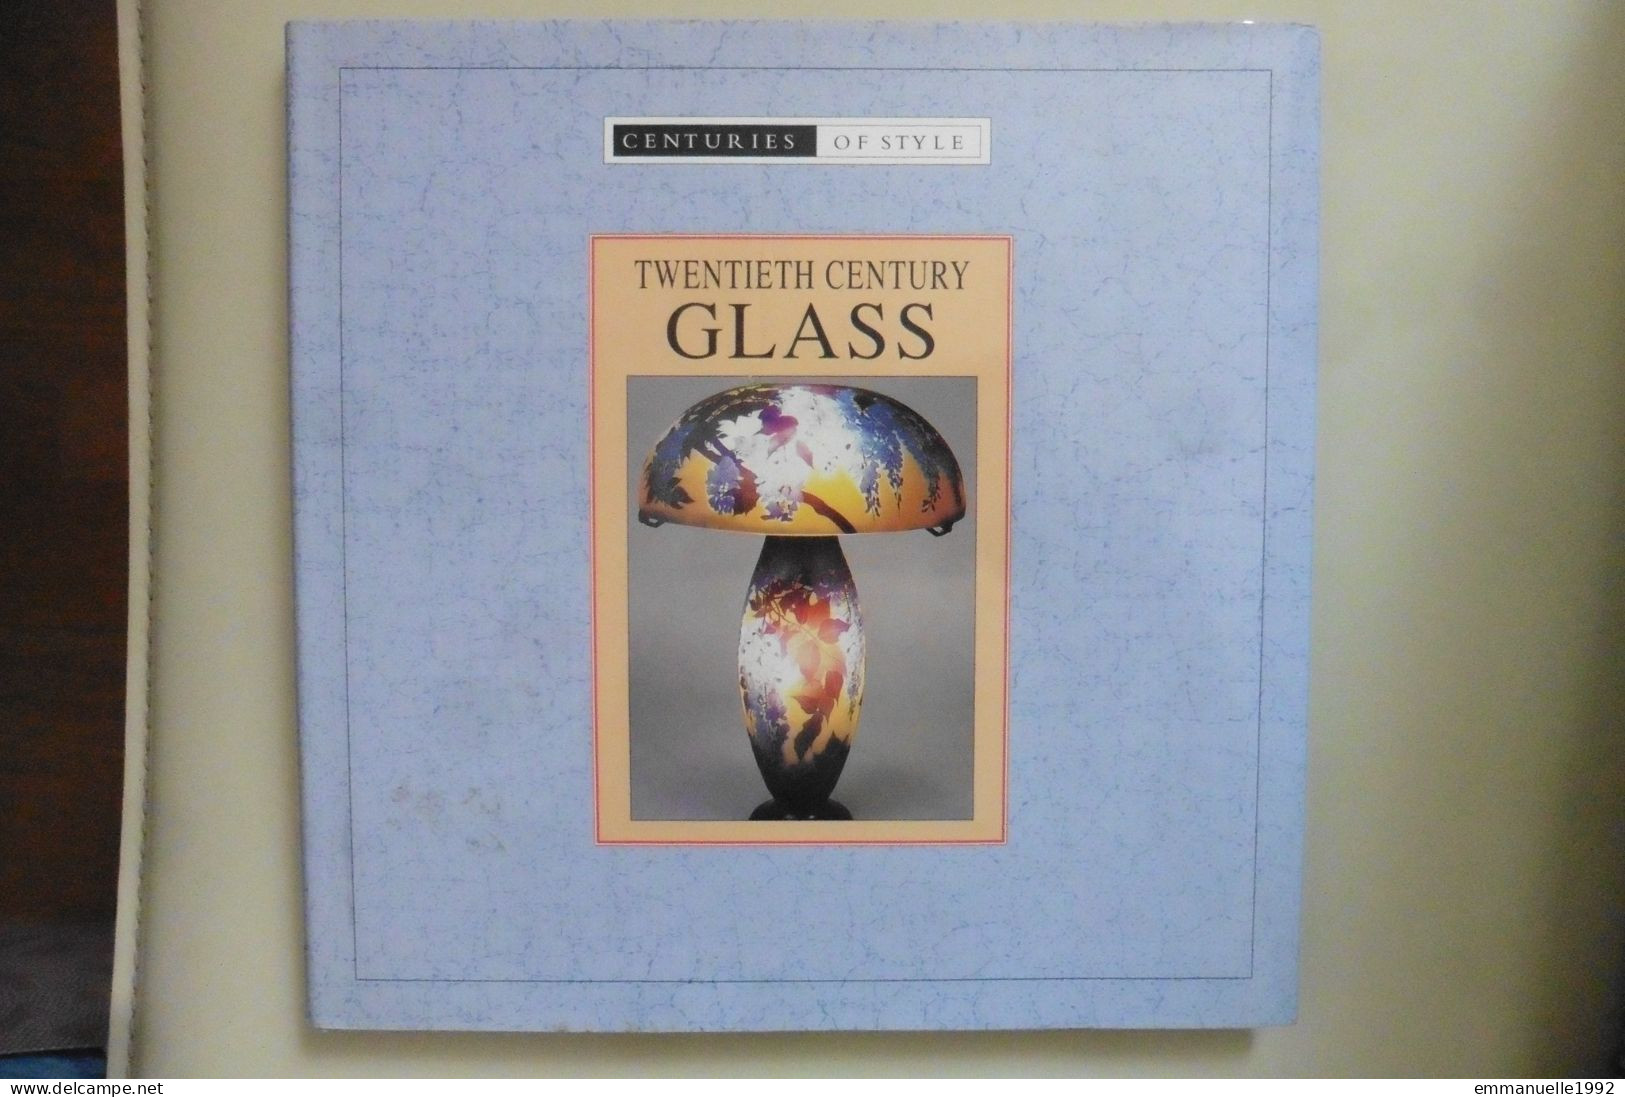 Livre Twentieth Century Glass - Le Verre Au 20e Siècle Art Deco Lalique Baccarat Tiffany Etc - English Text - Schöne Künste